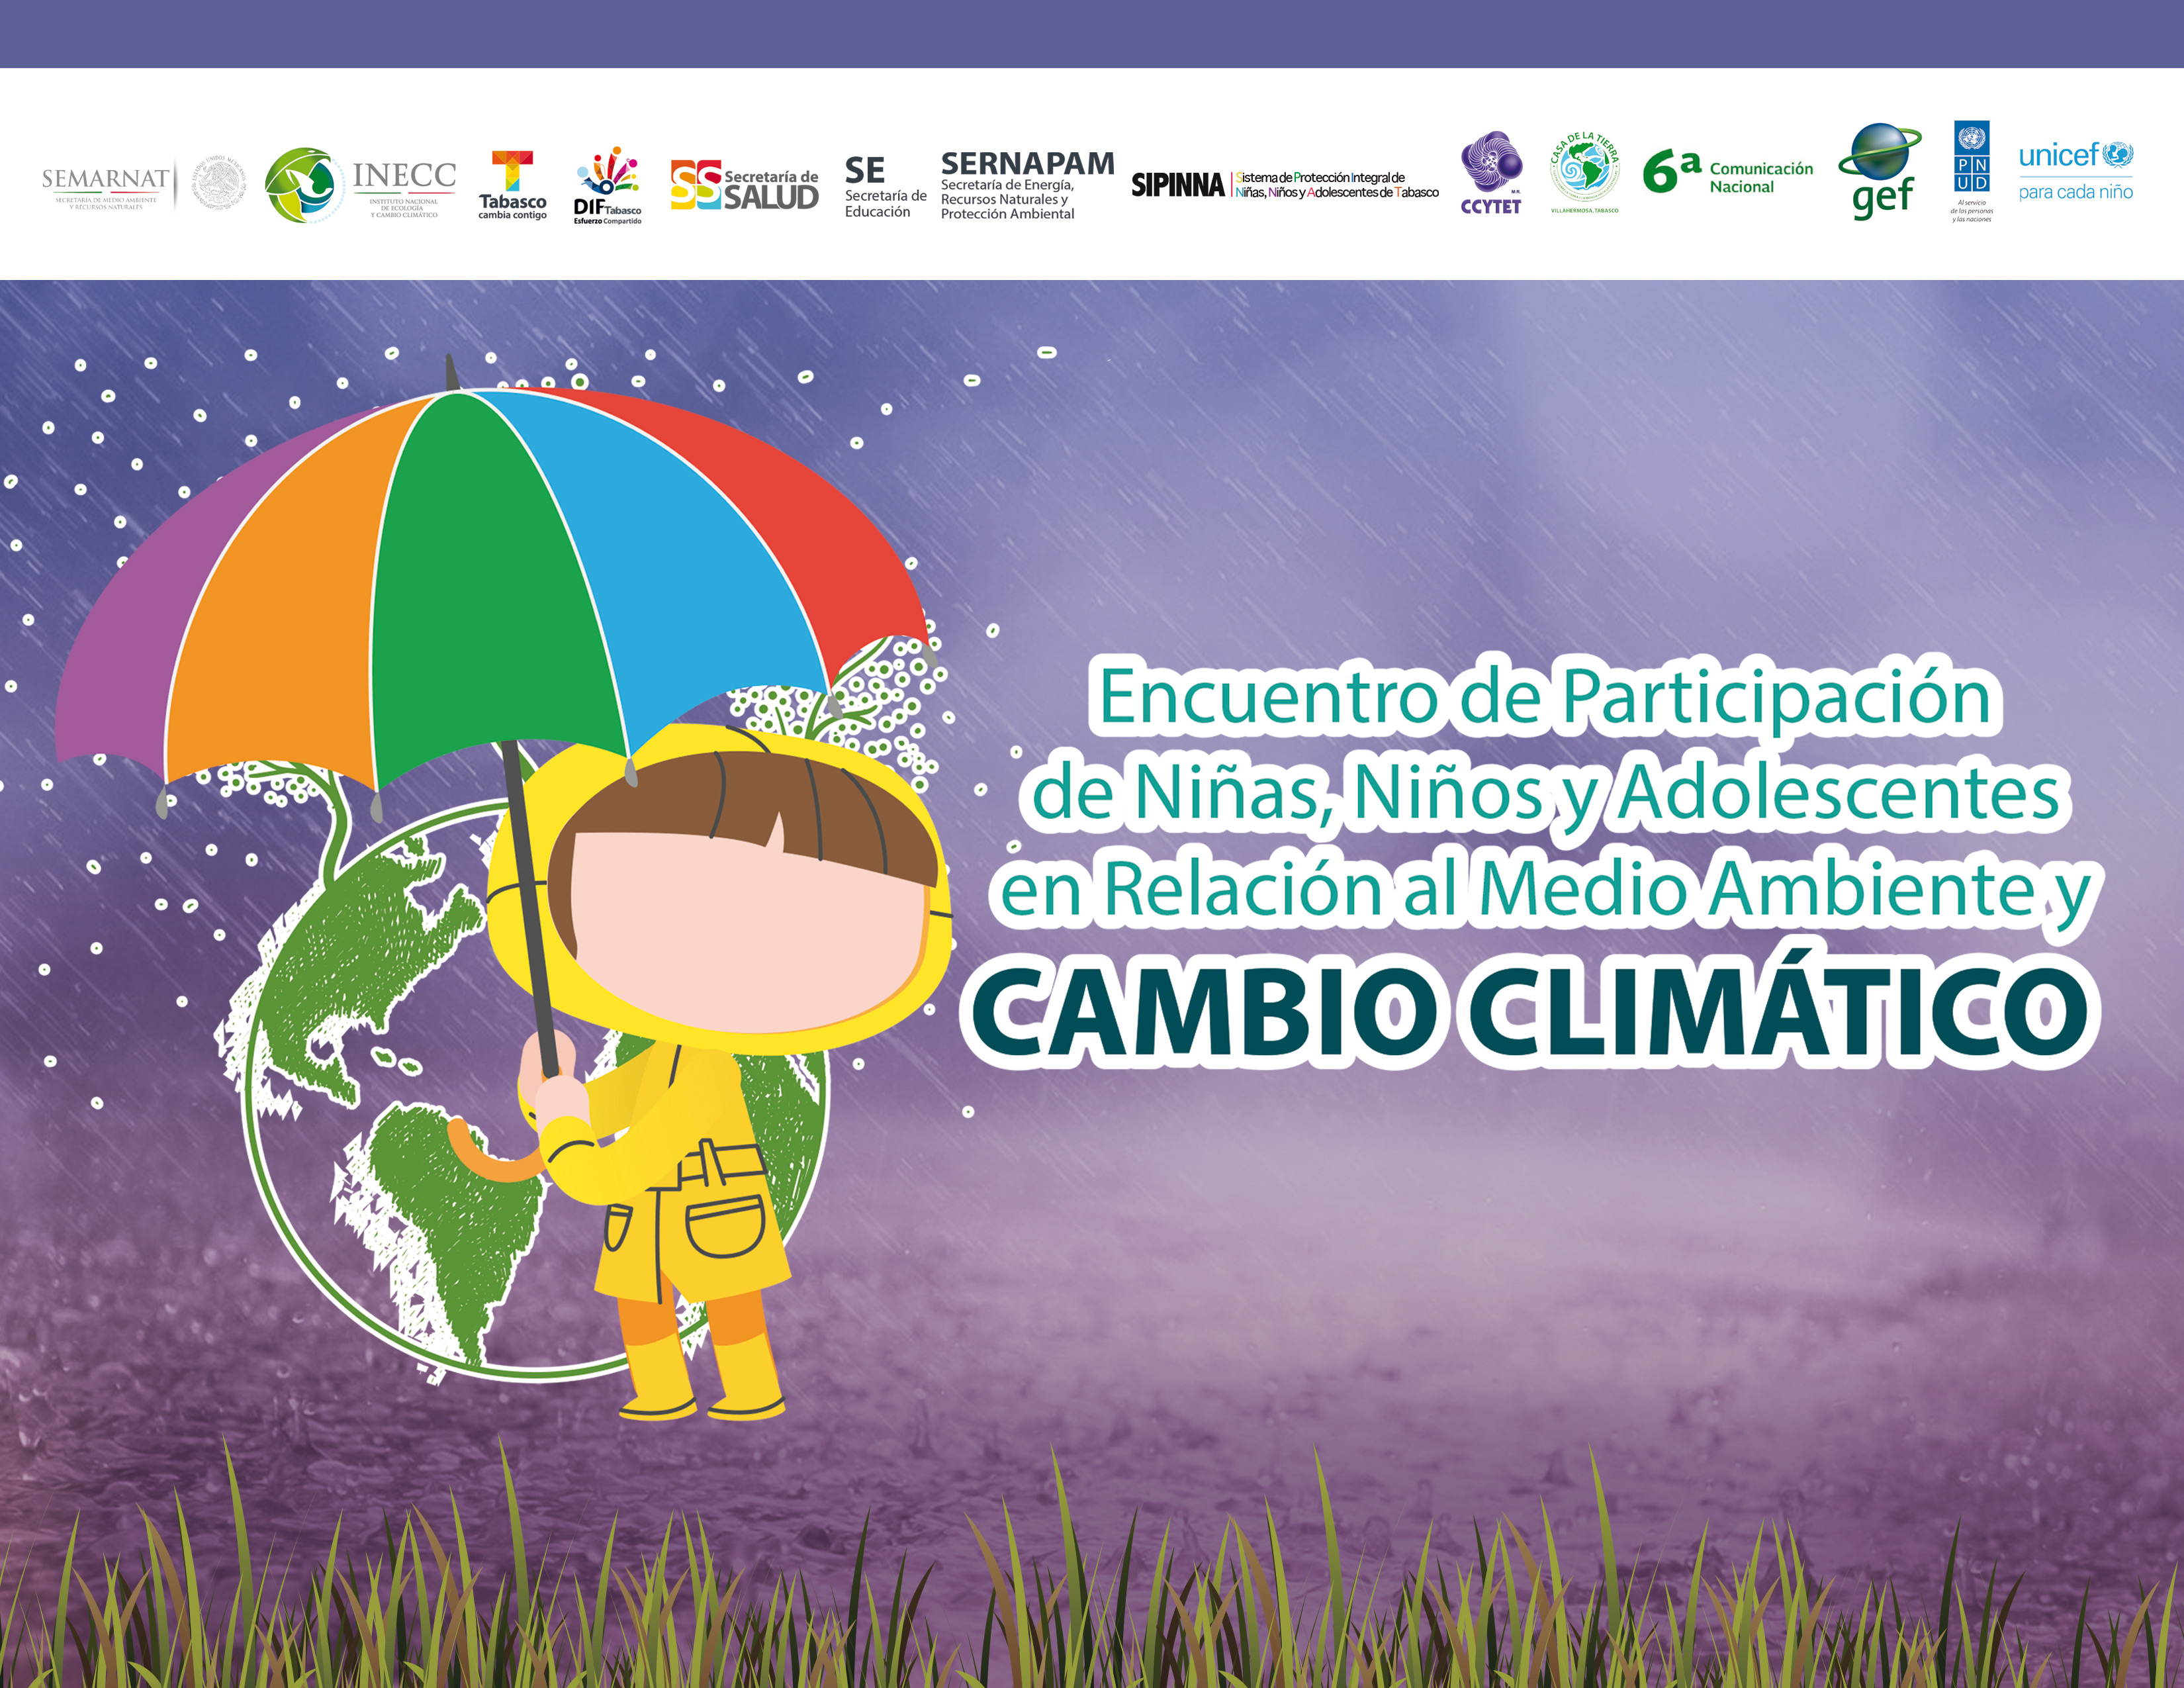 Encuentro de Participación de Ninas, Niños y Adolescentes en Relación al Medio Ambiente y Cambio Climático